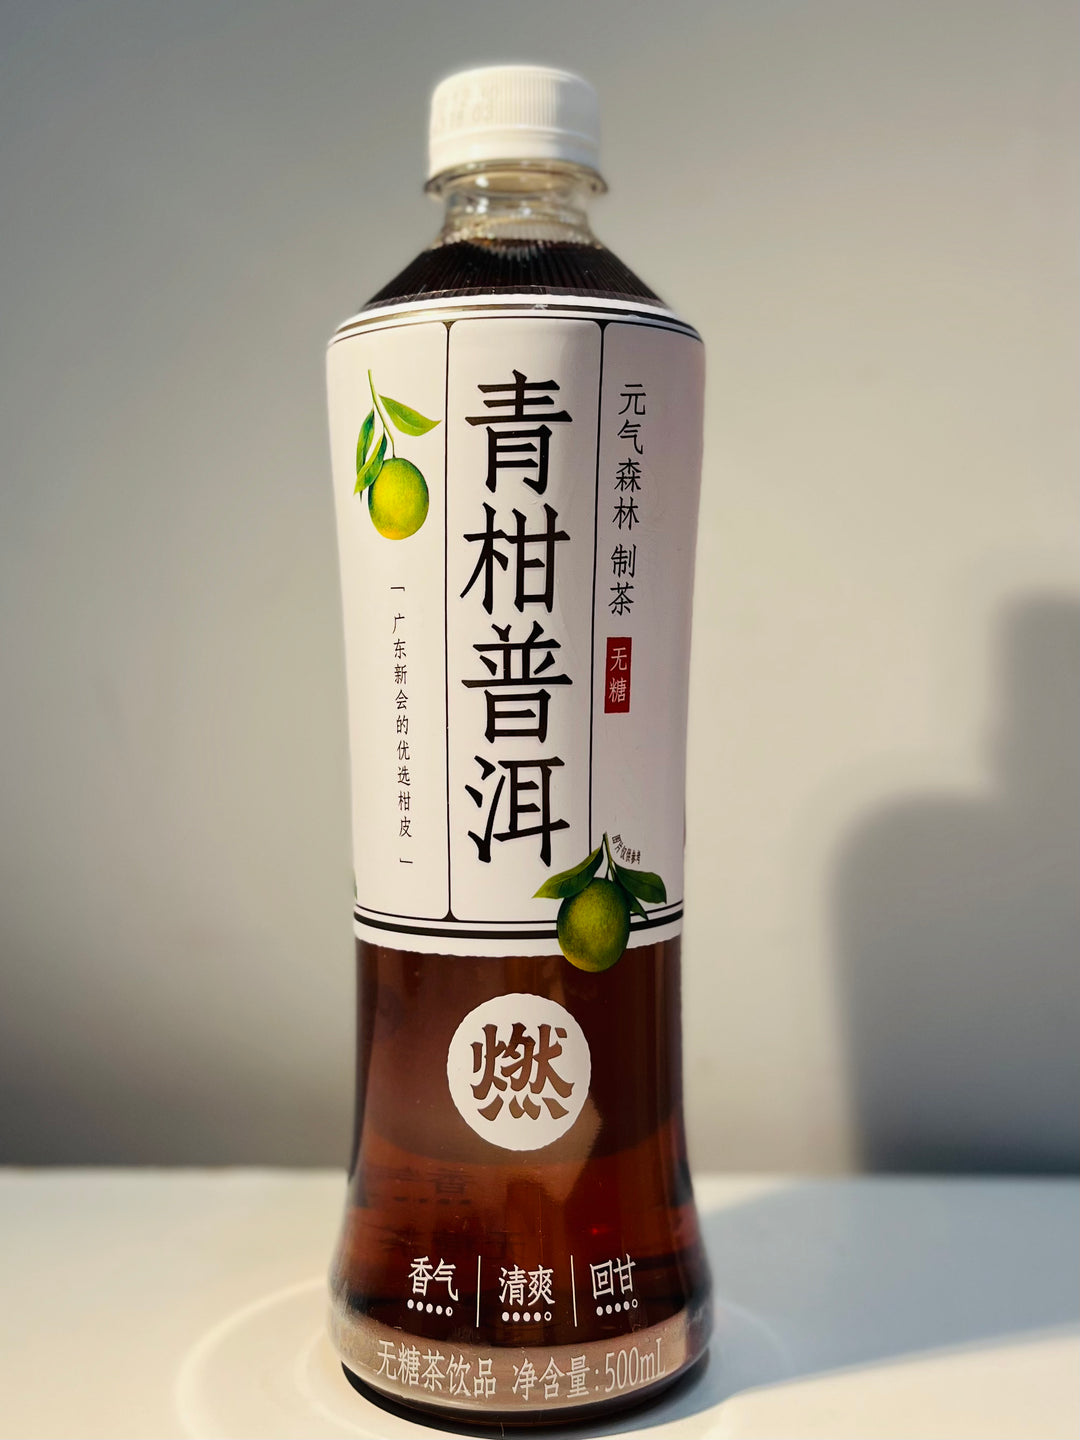 元气森林燃茶青柑普洱500ml GKF Tangerine Tea